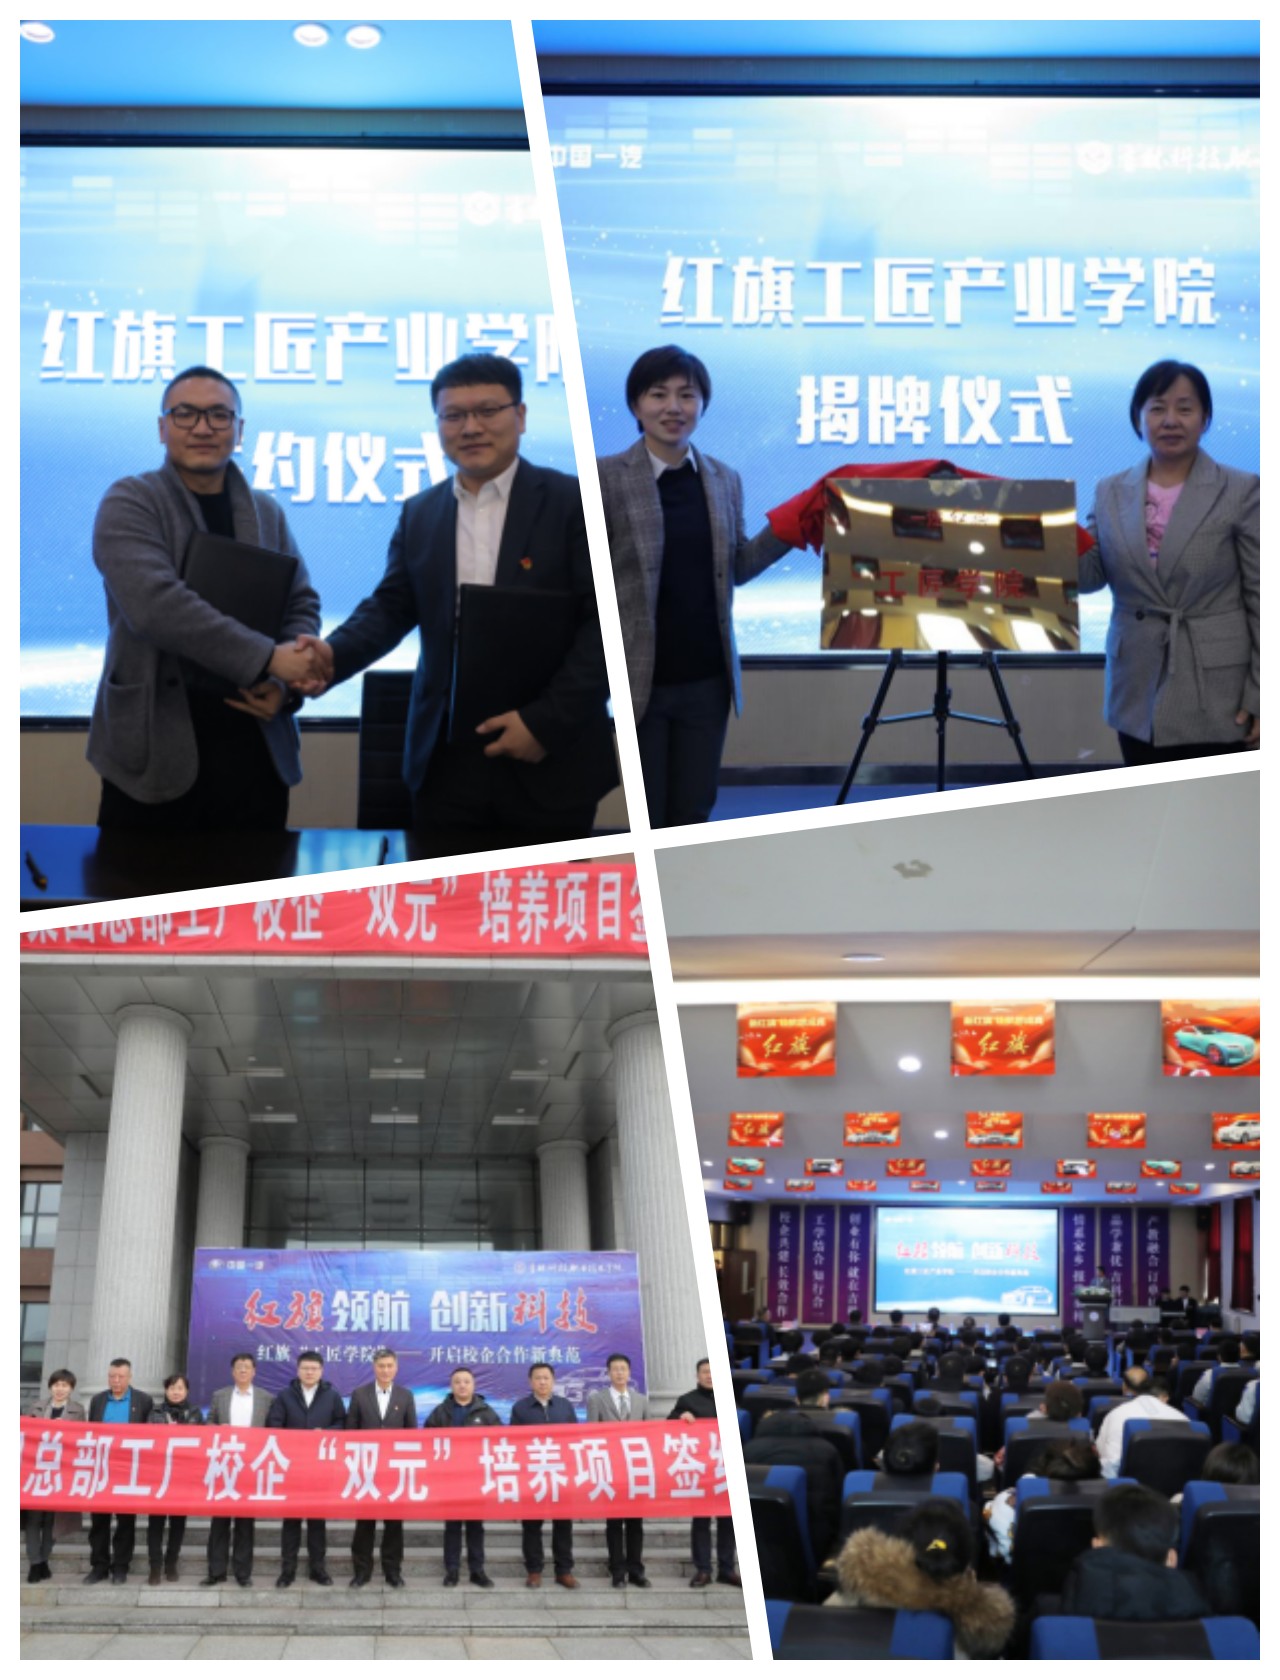 吉林科技职业技术学院与中国一汽联合举办红旗工匠产业学院